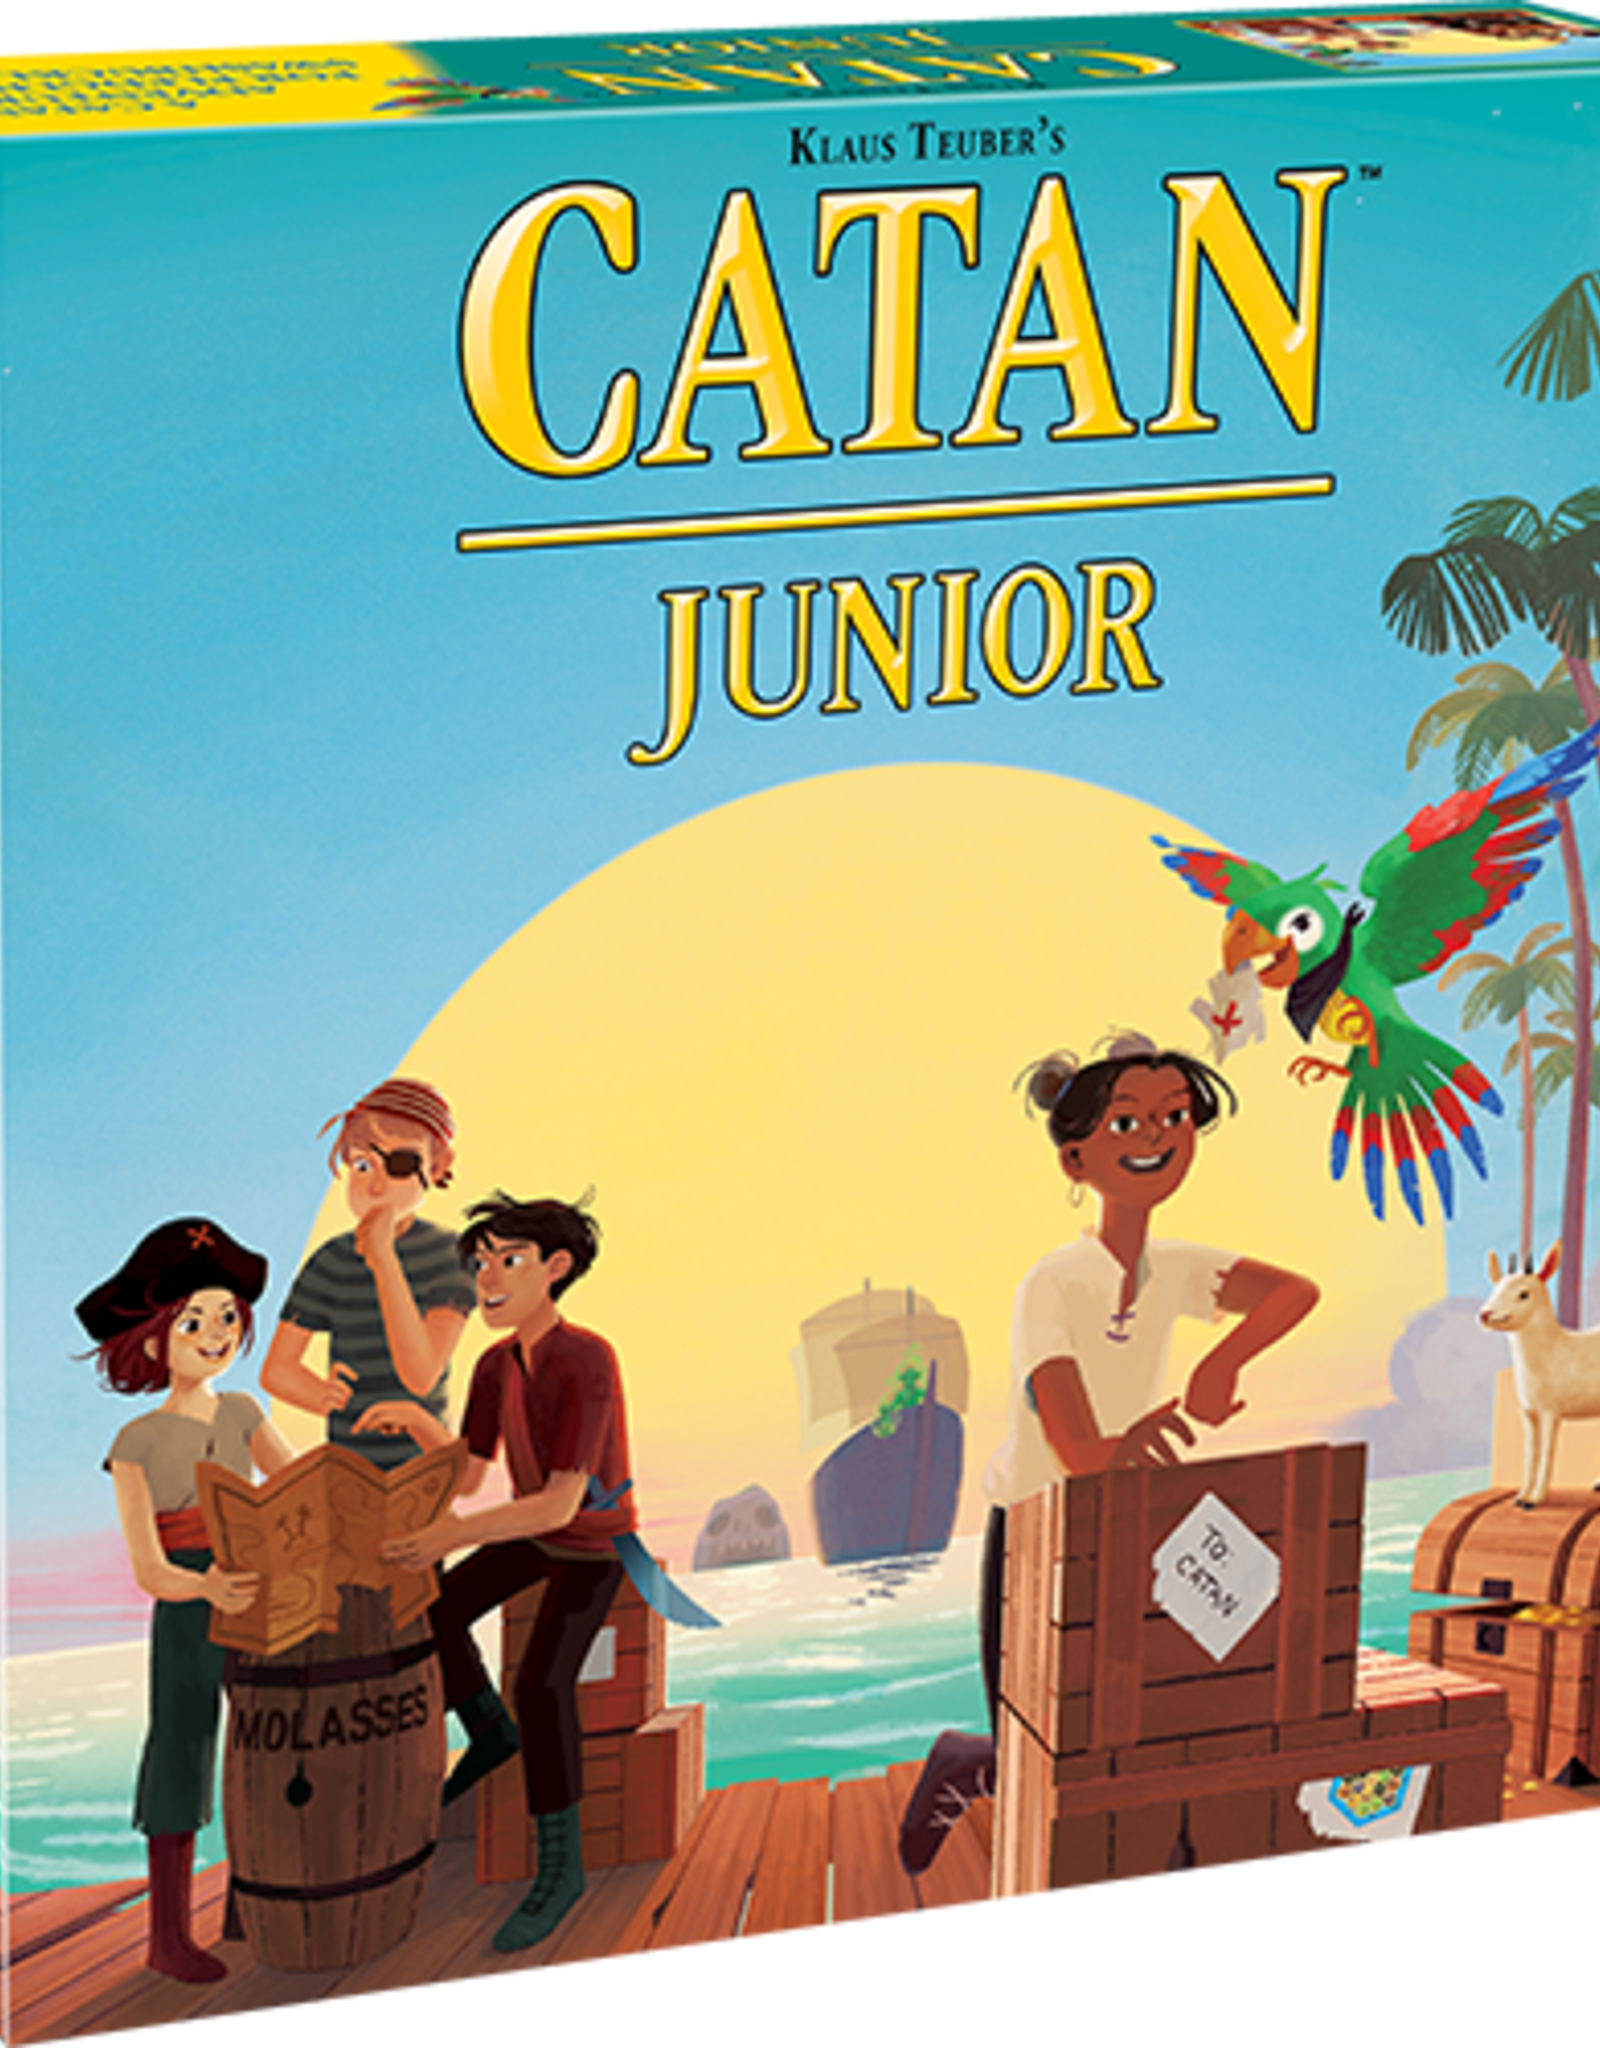 Mayfair Games Catan: Catan Junior